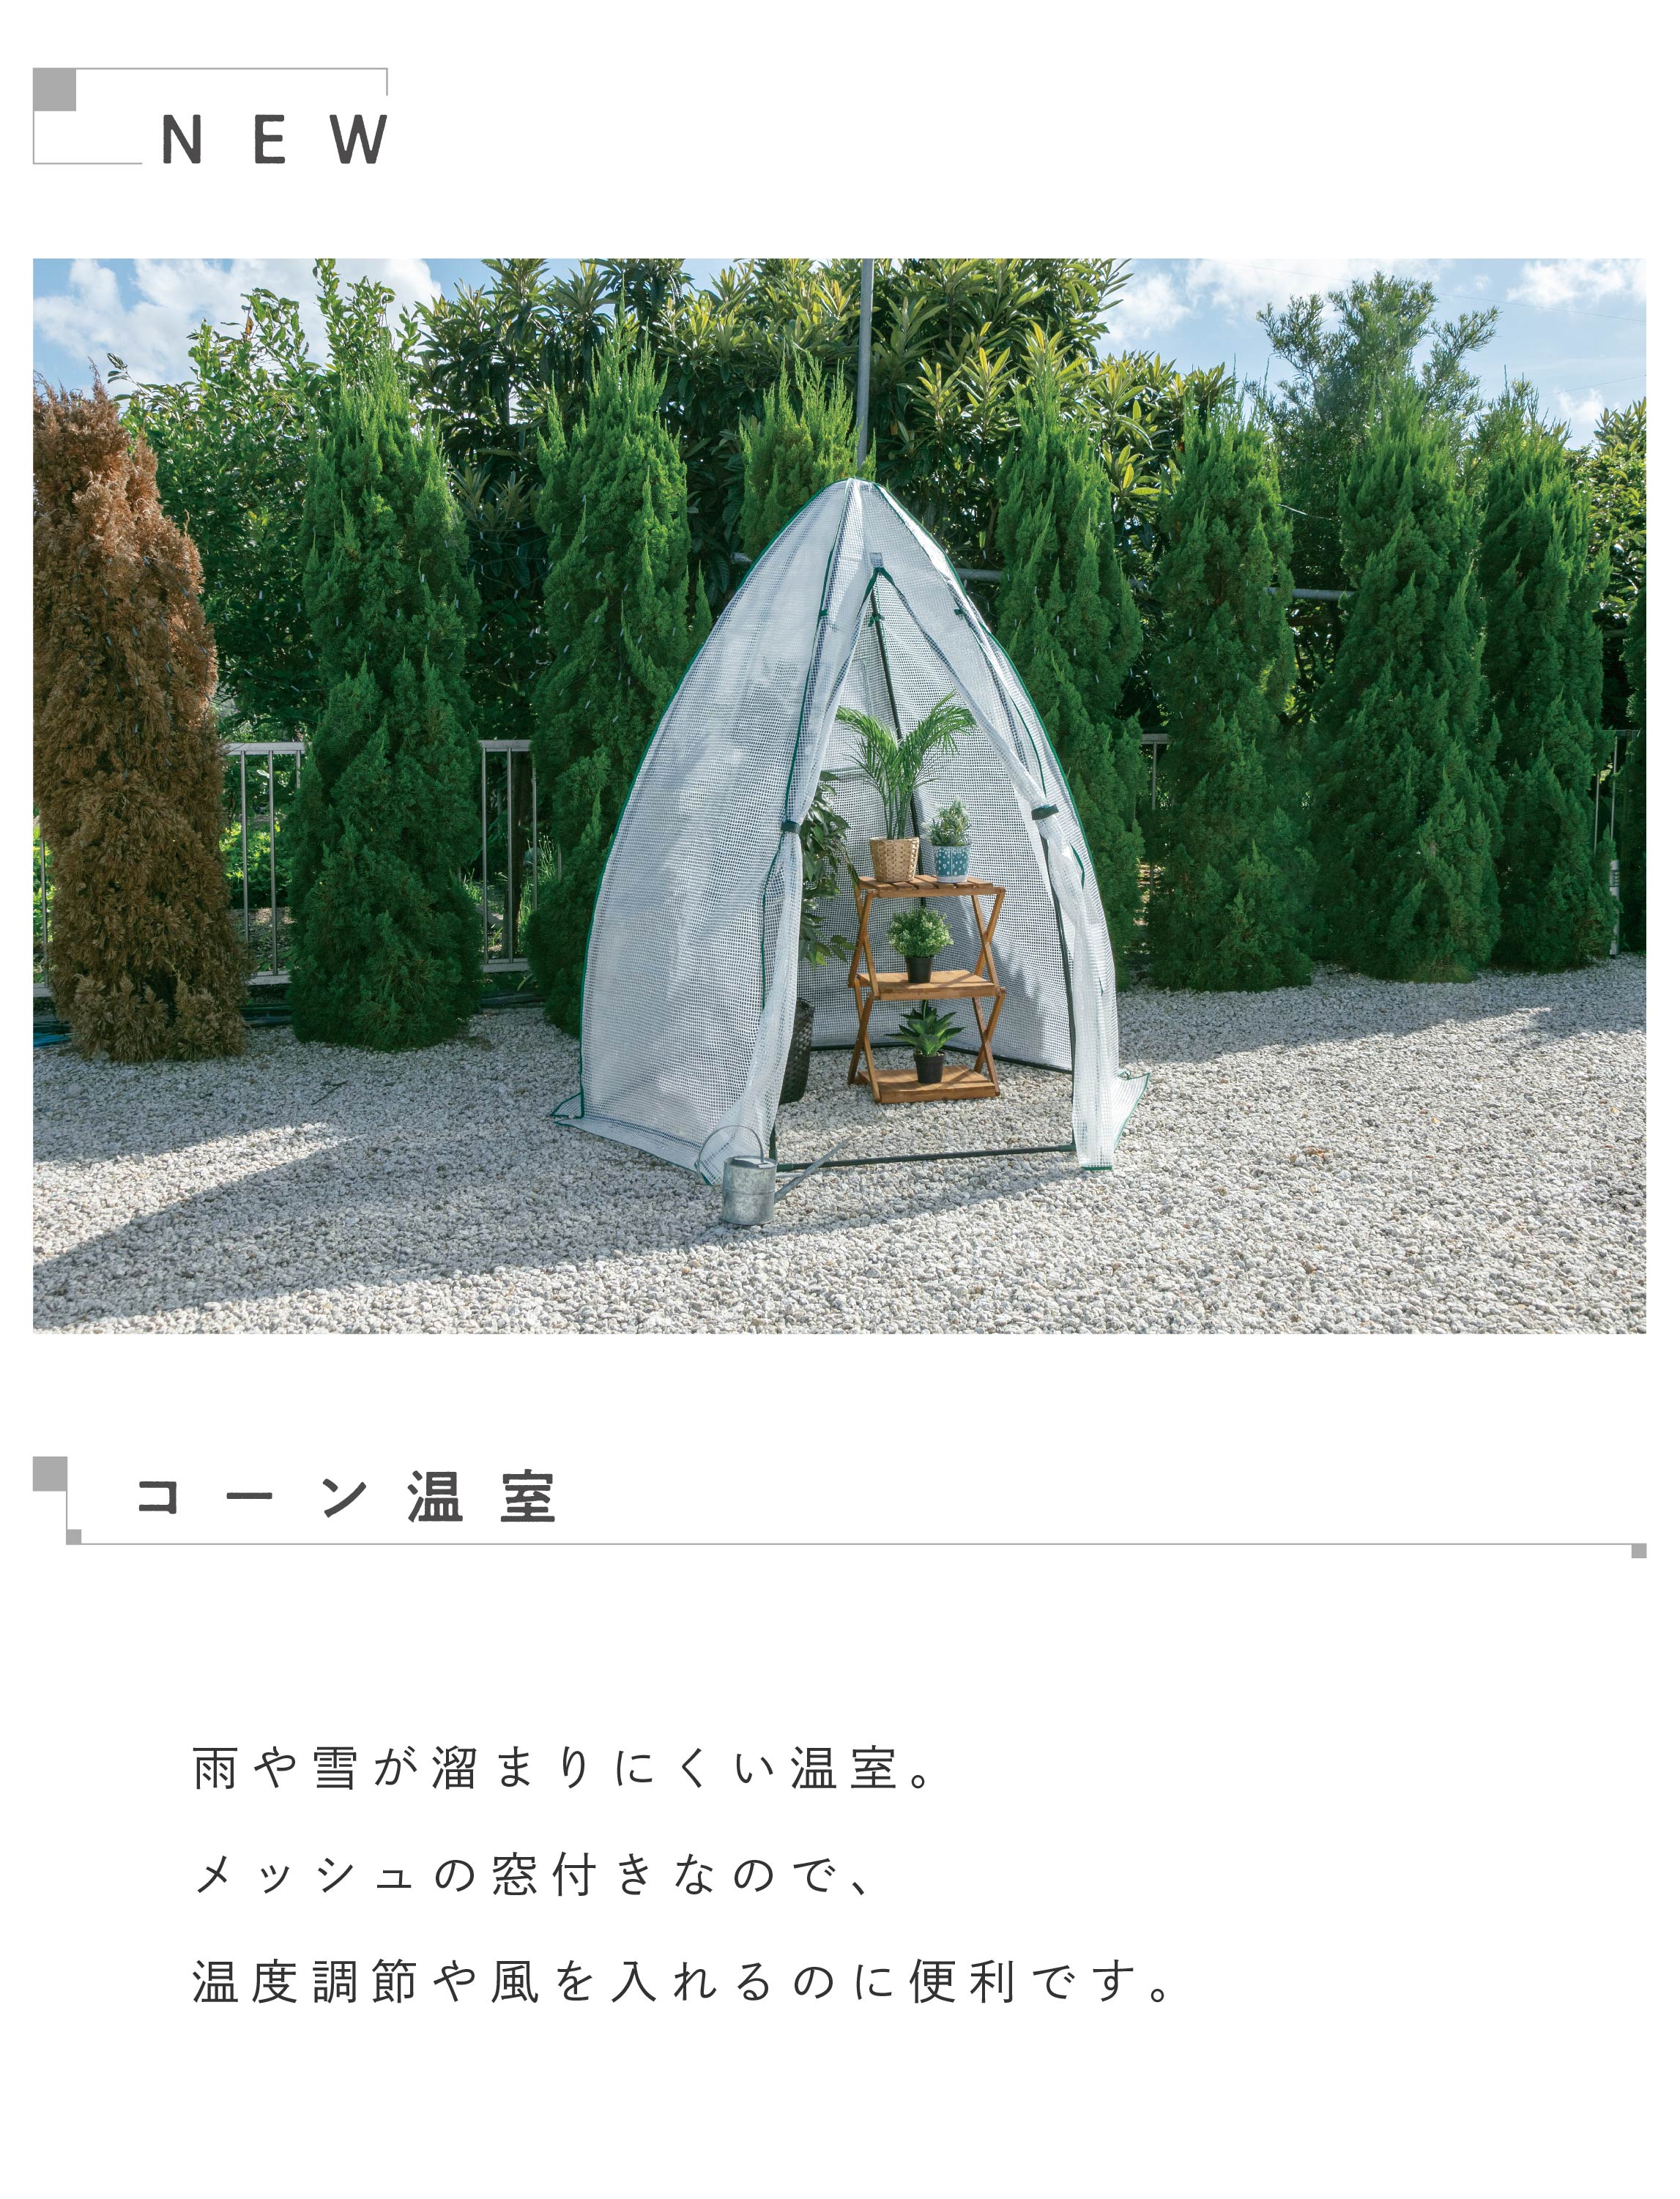 武田コーポレーション 温室・園芸・棚 グリーン 121.5×186×193cm ビッググリーン温室 BGO-122 - 2